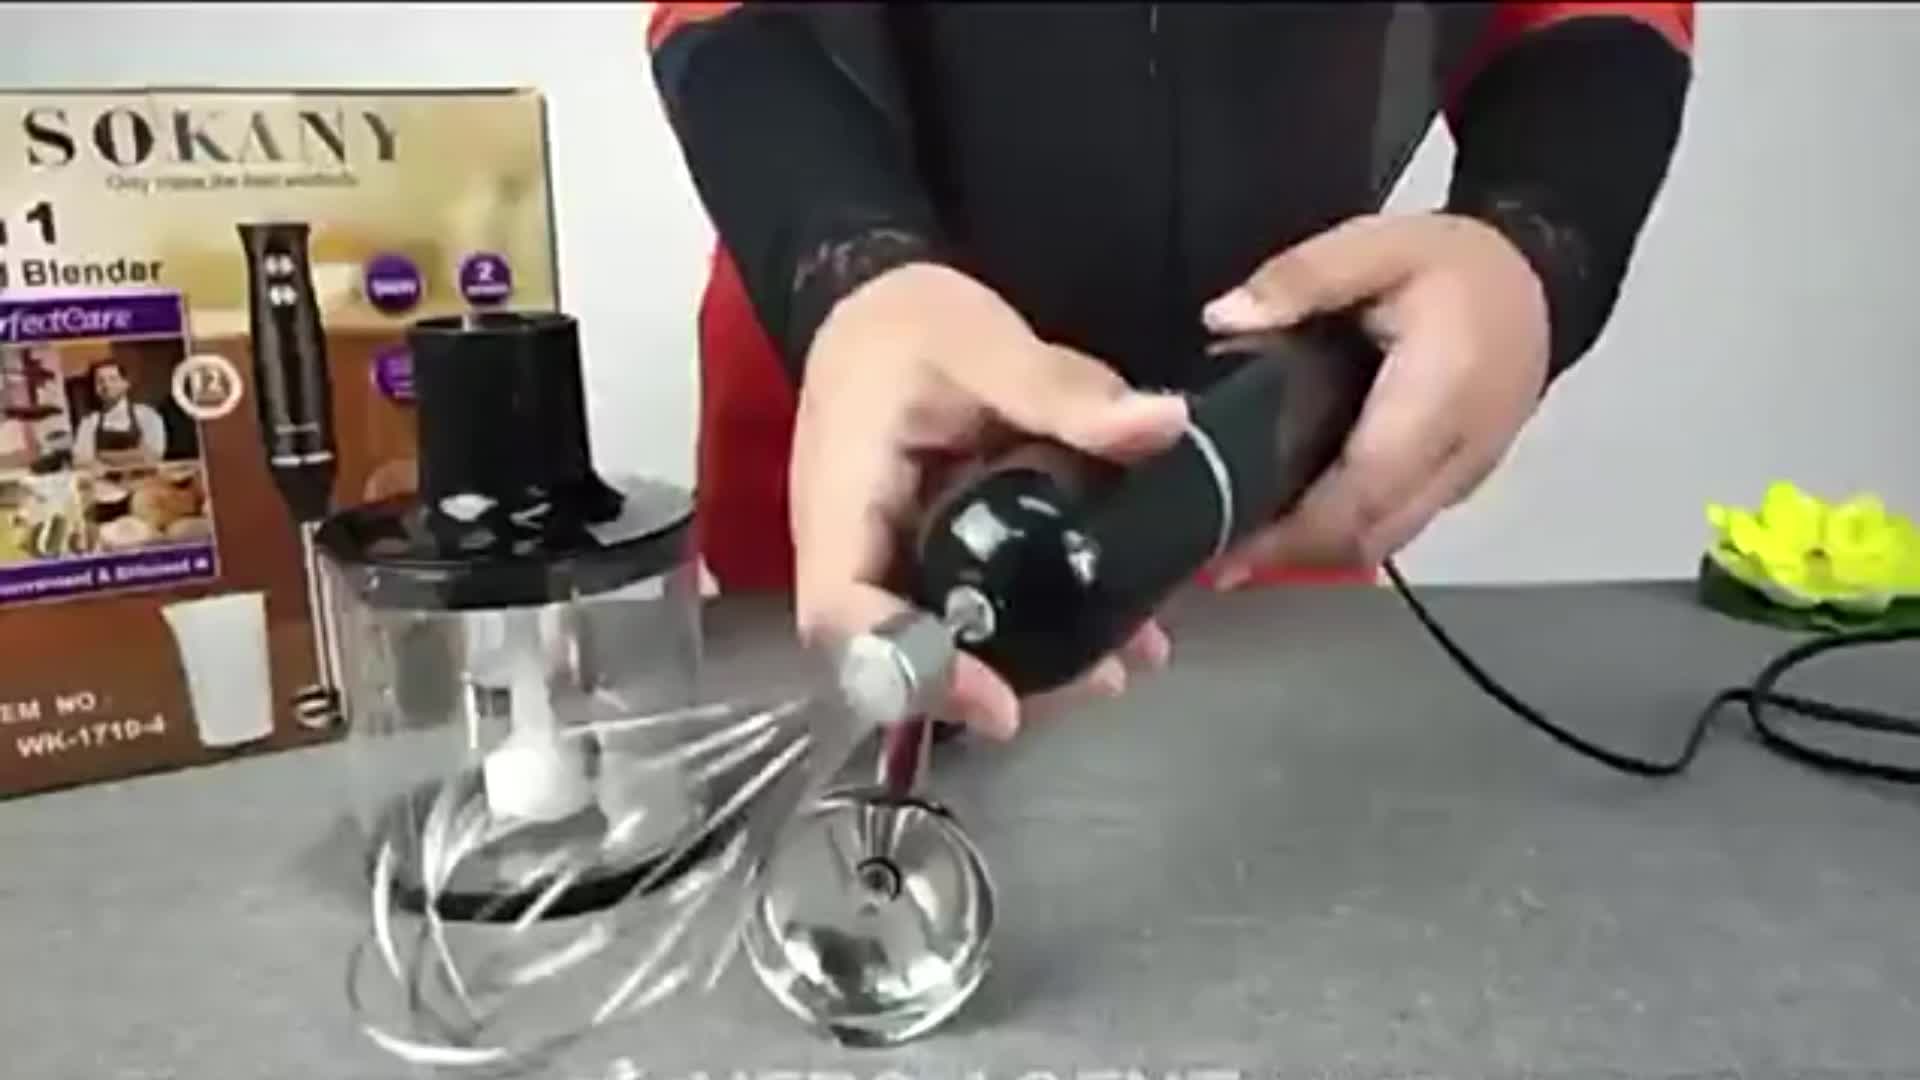 sokany commercial mini hand immersion blender